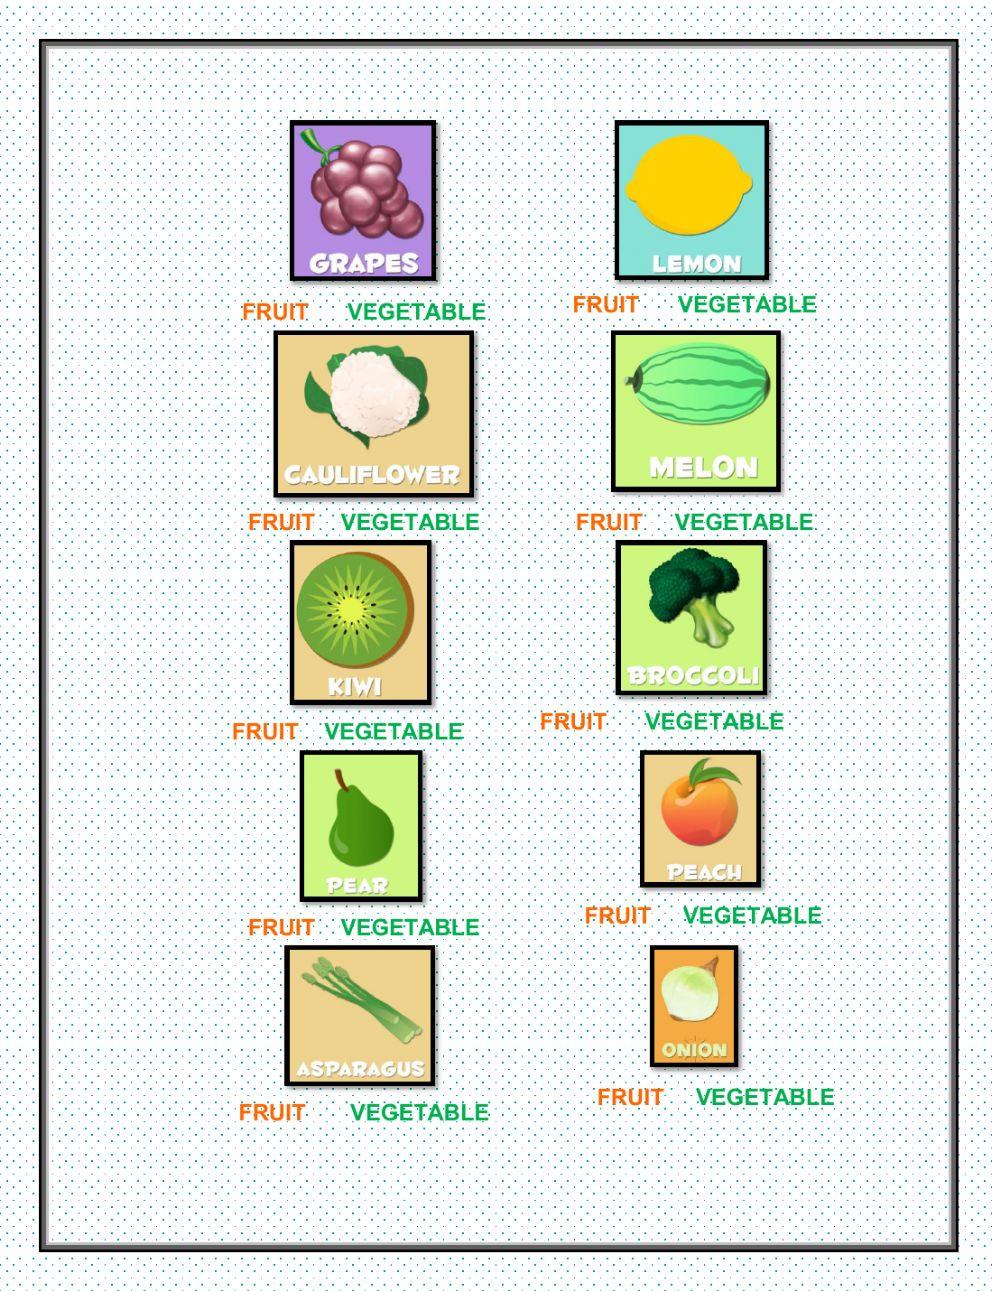 Fruits or vegetables